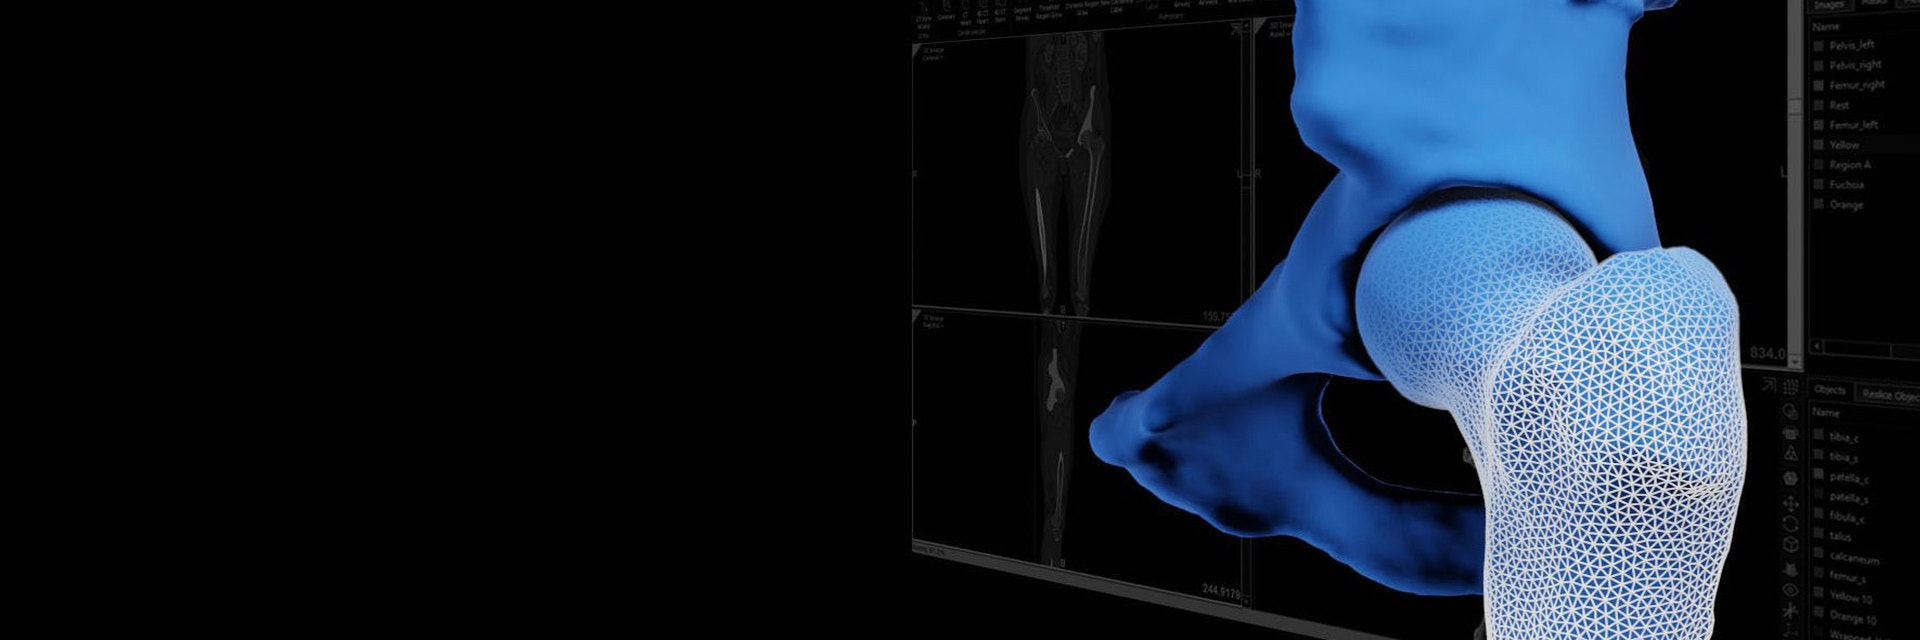 Digitales Bild eines Knochens mit Markierungen auf dem unteren Vorderteil